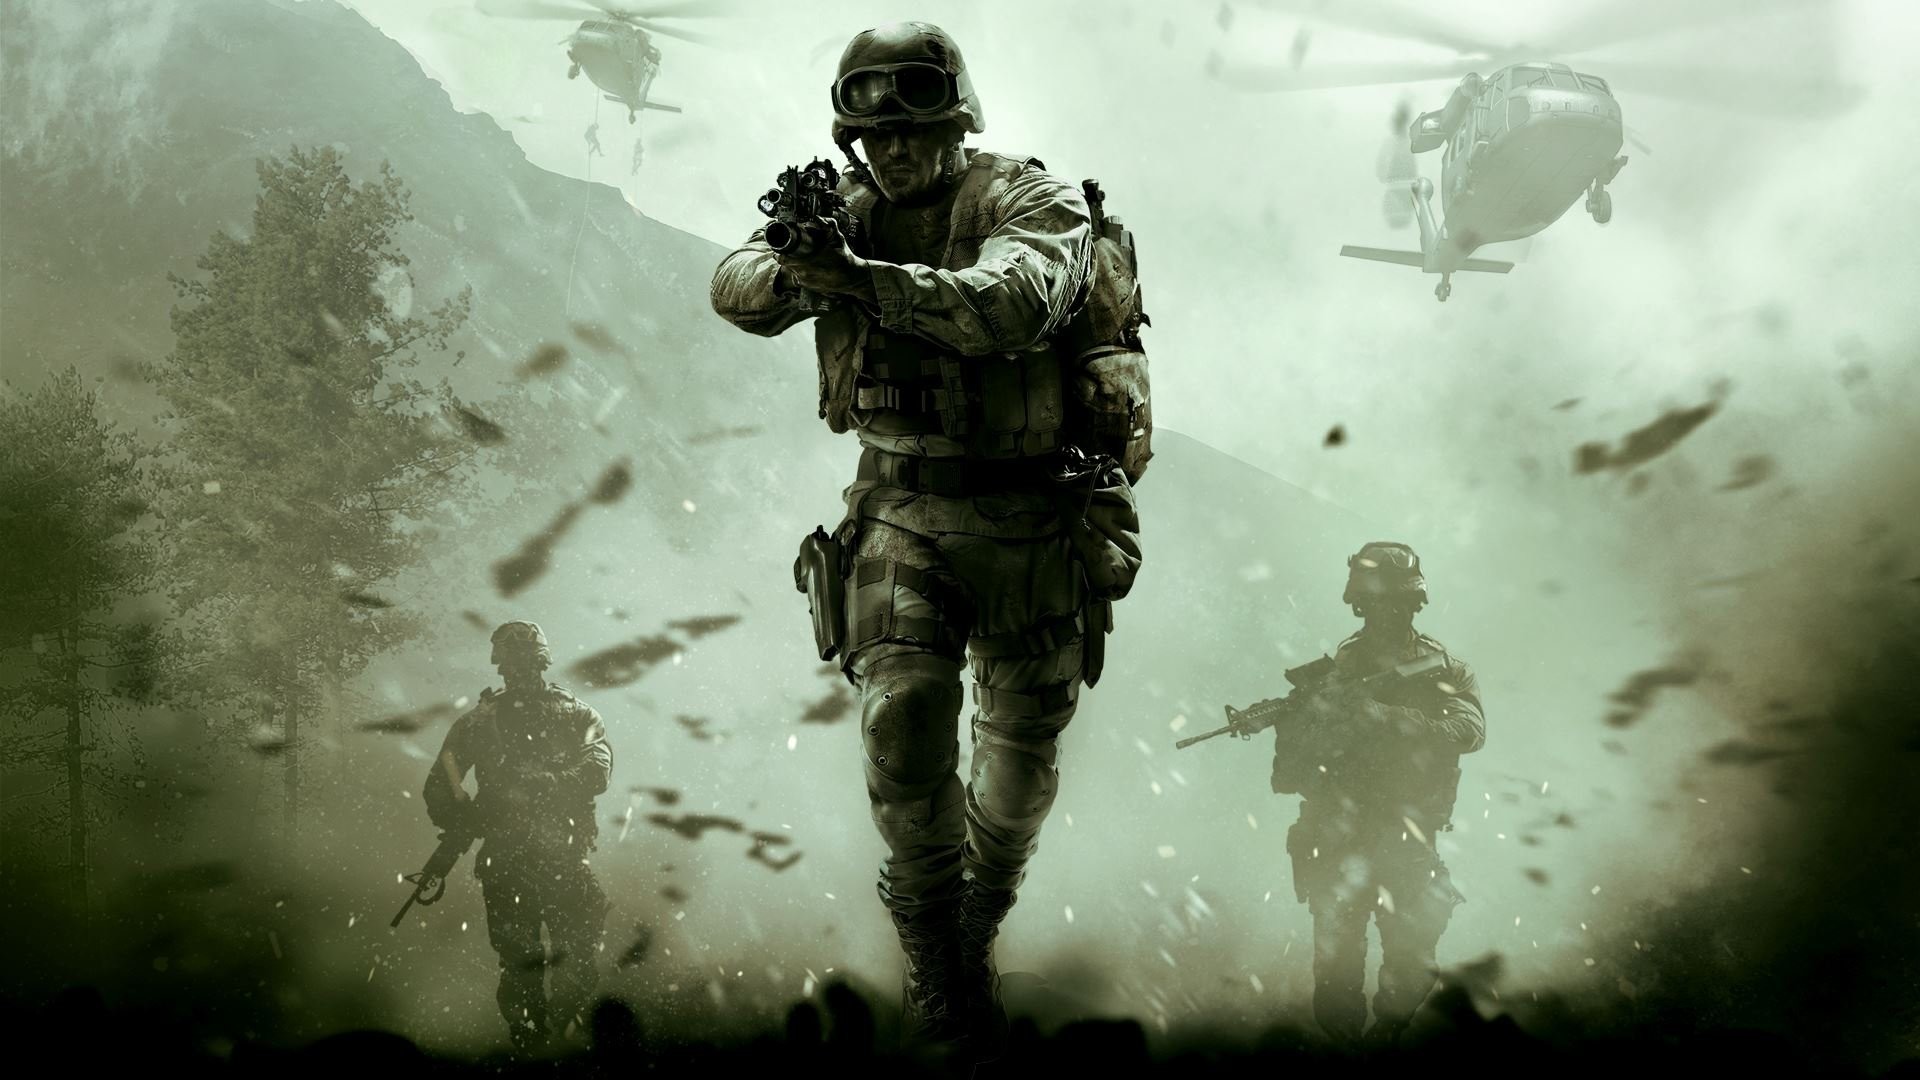 1920x1080 Best 20+ Modern warfare ideas on Pinterest | Call of Duty, Call duty games  and Call of duty warfare